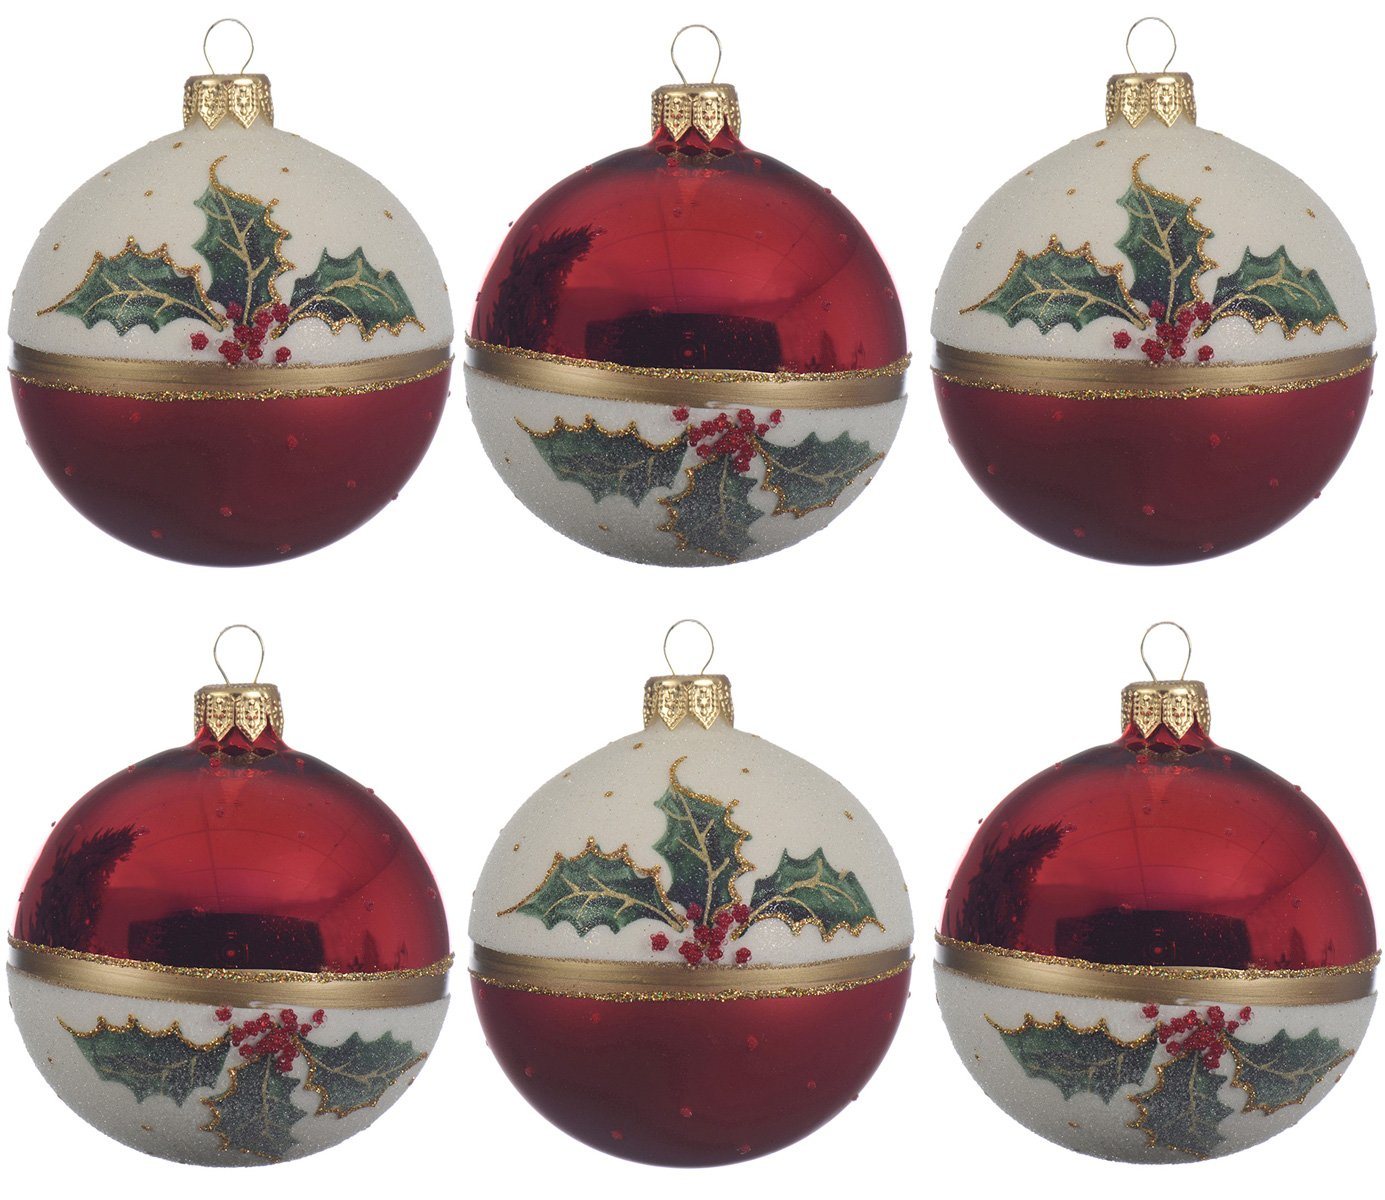 Decoris season decorations Weihnachtsbaumkugel, Weihnachtskugeln Glas mit Motiv Mistelzweige 8cm rot / weiß, 6er Set von Decoris season decorations